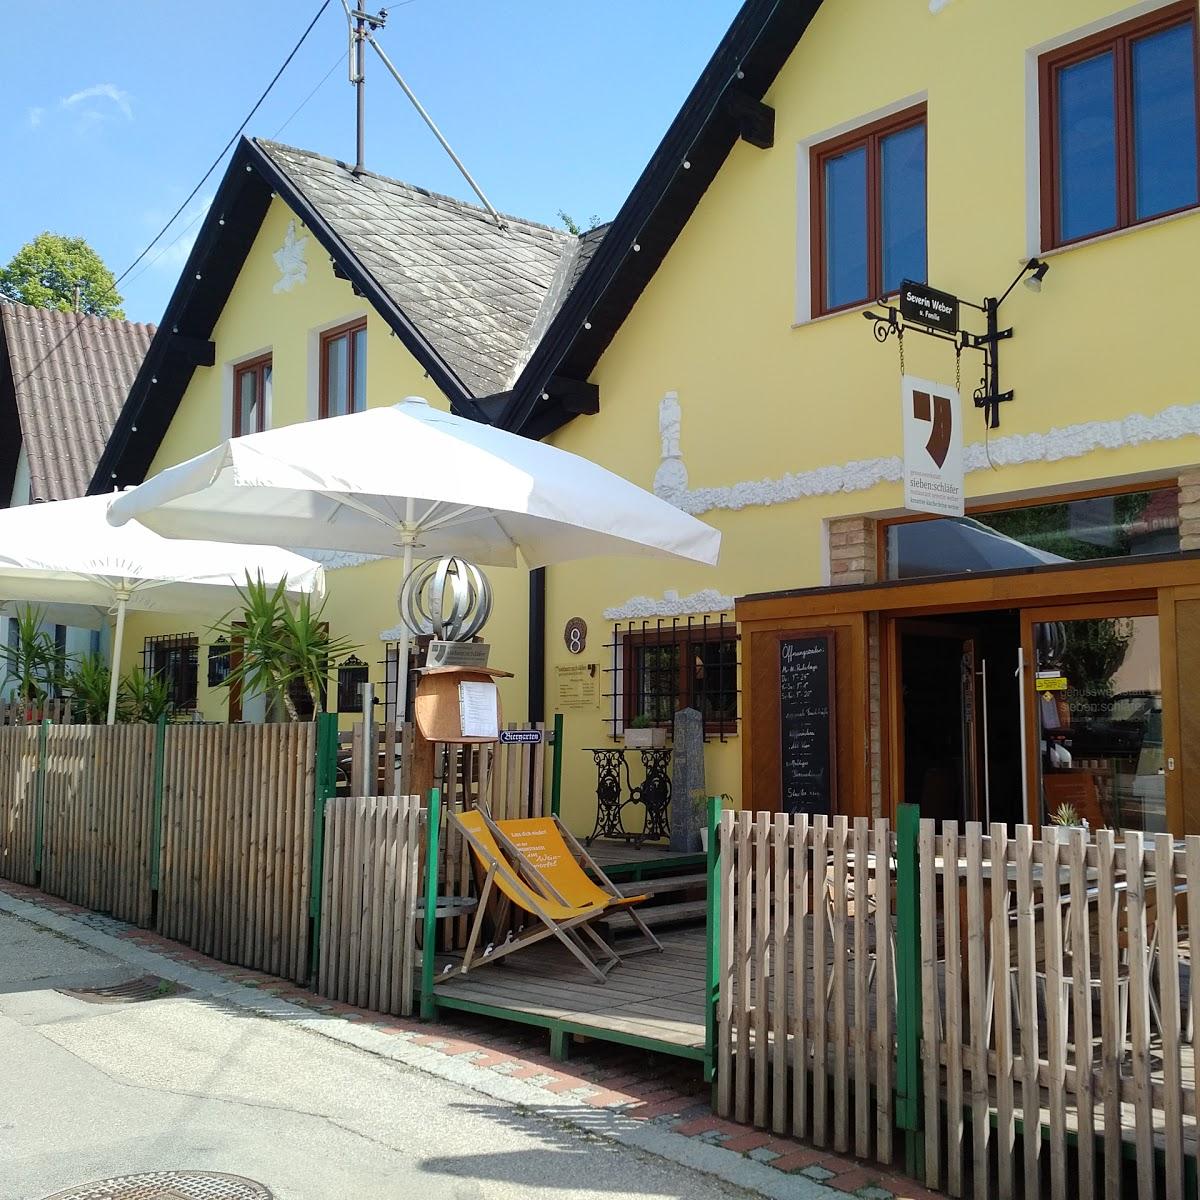 Restaurant "sieben:schläfer genusswerkstatt" in Falkenstein bei Poysdorf